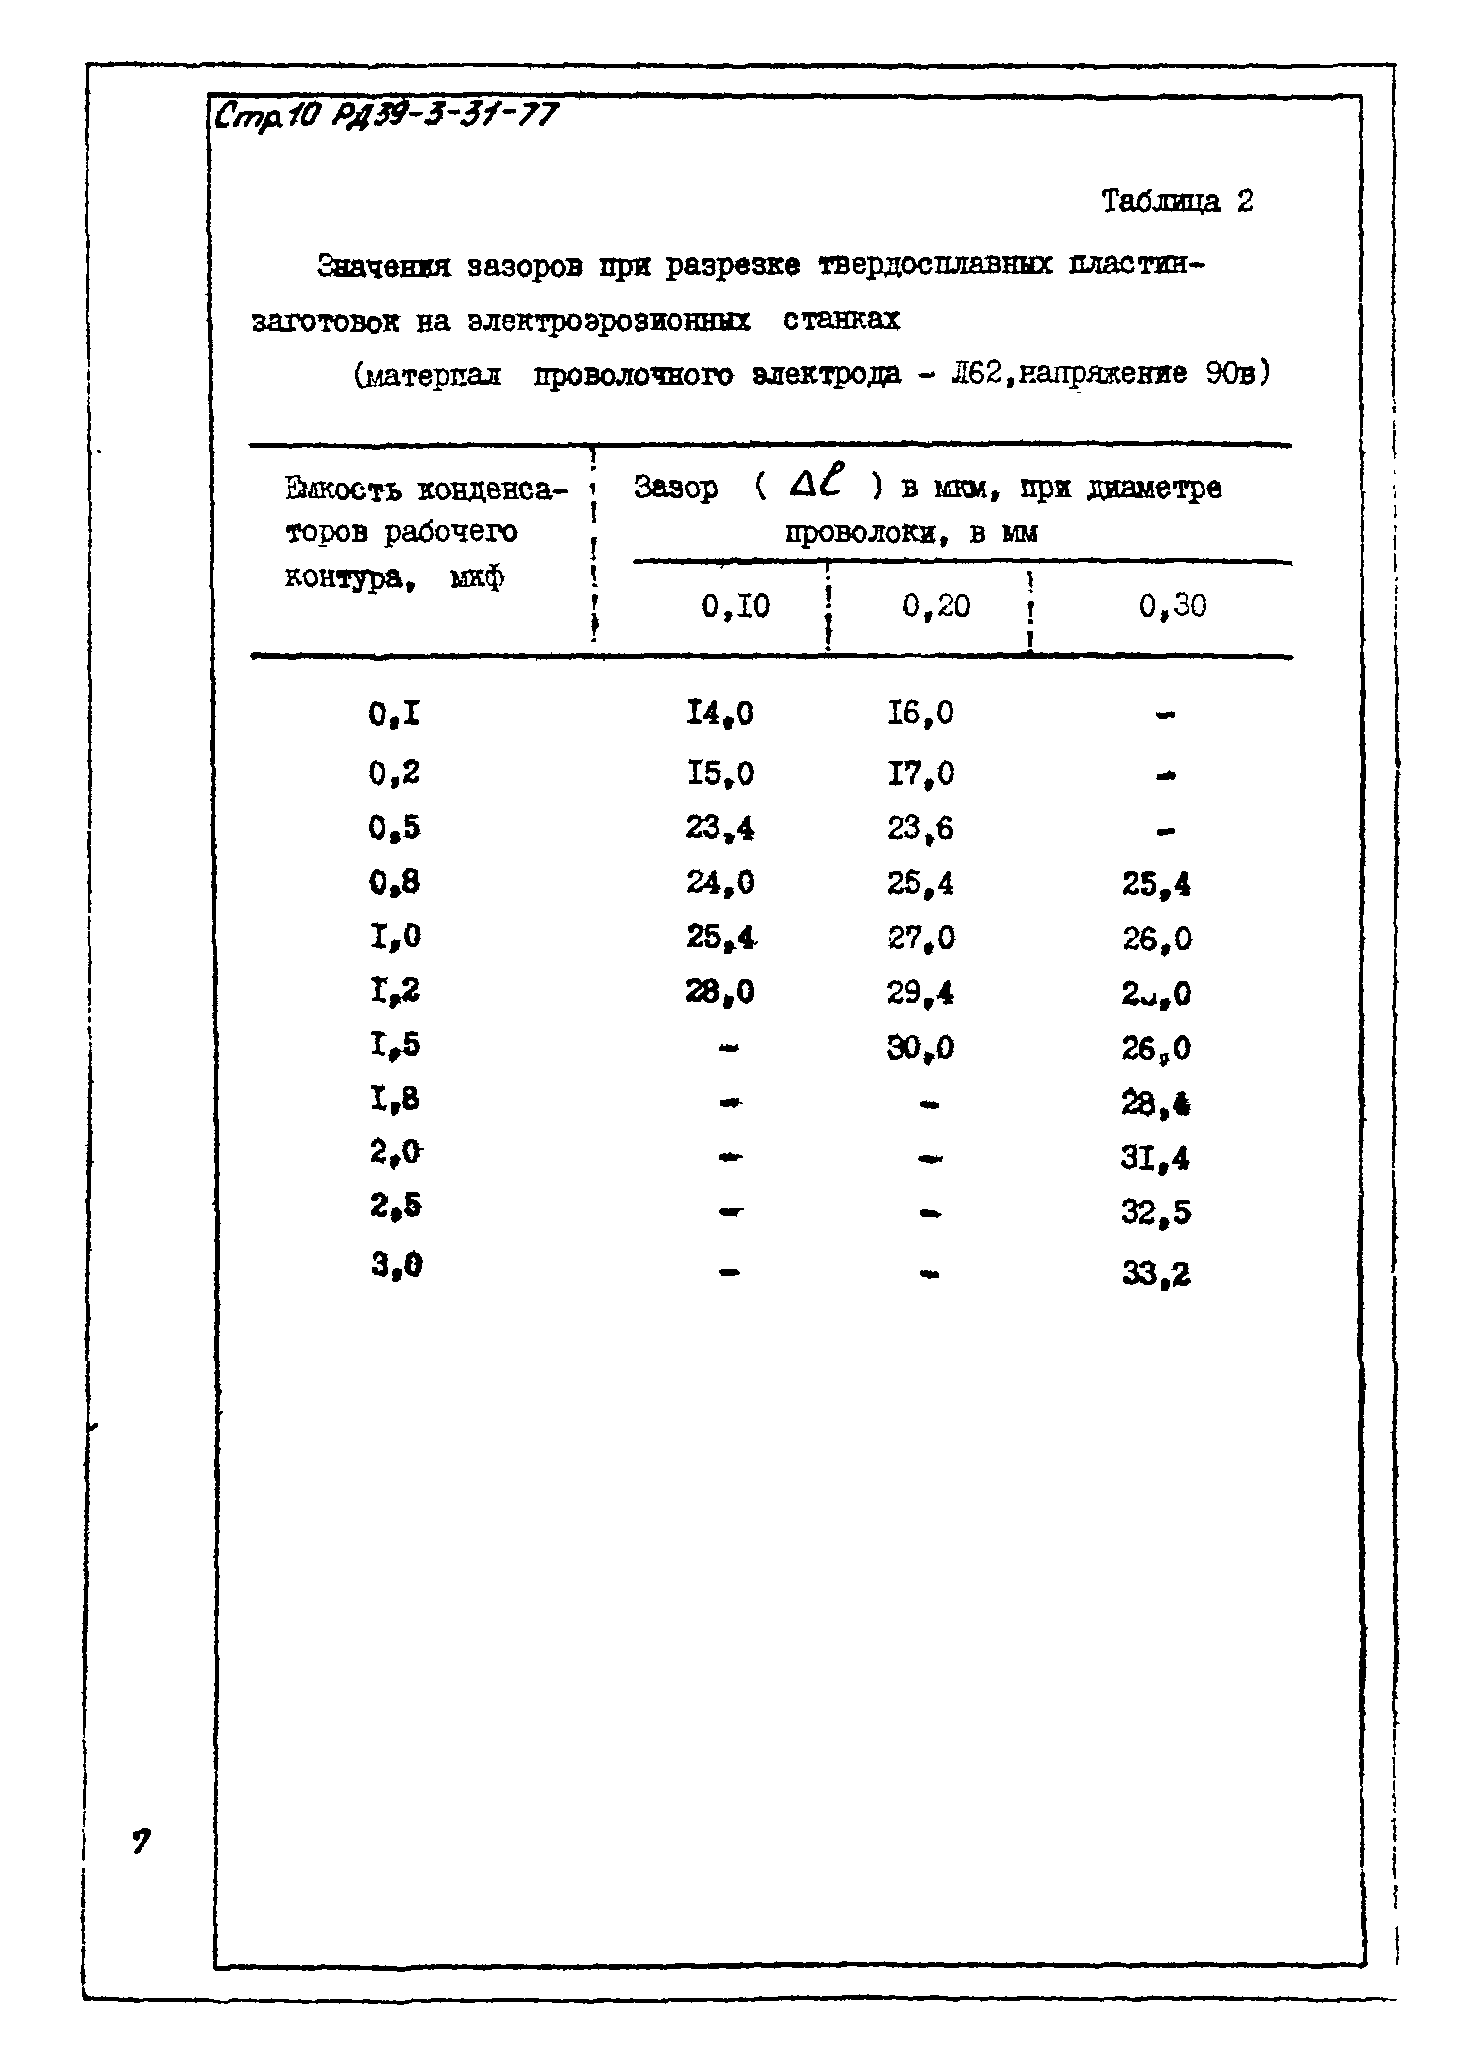 РД 39-3-31-77